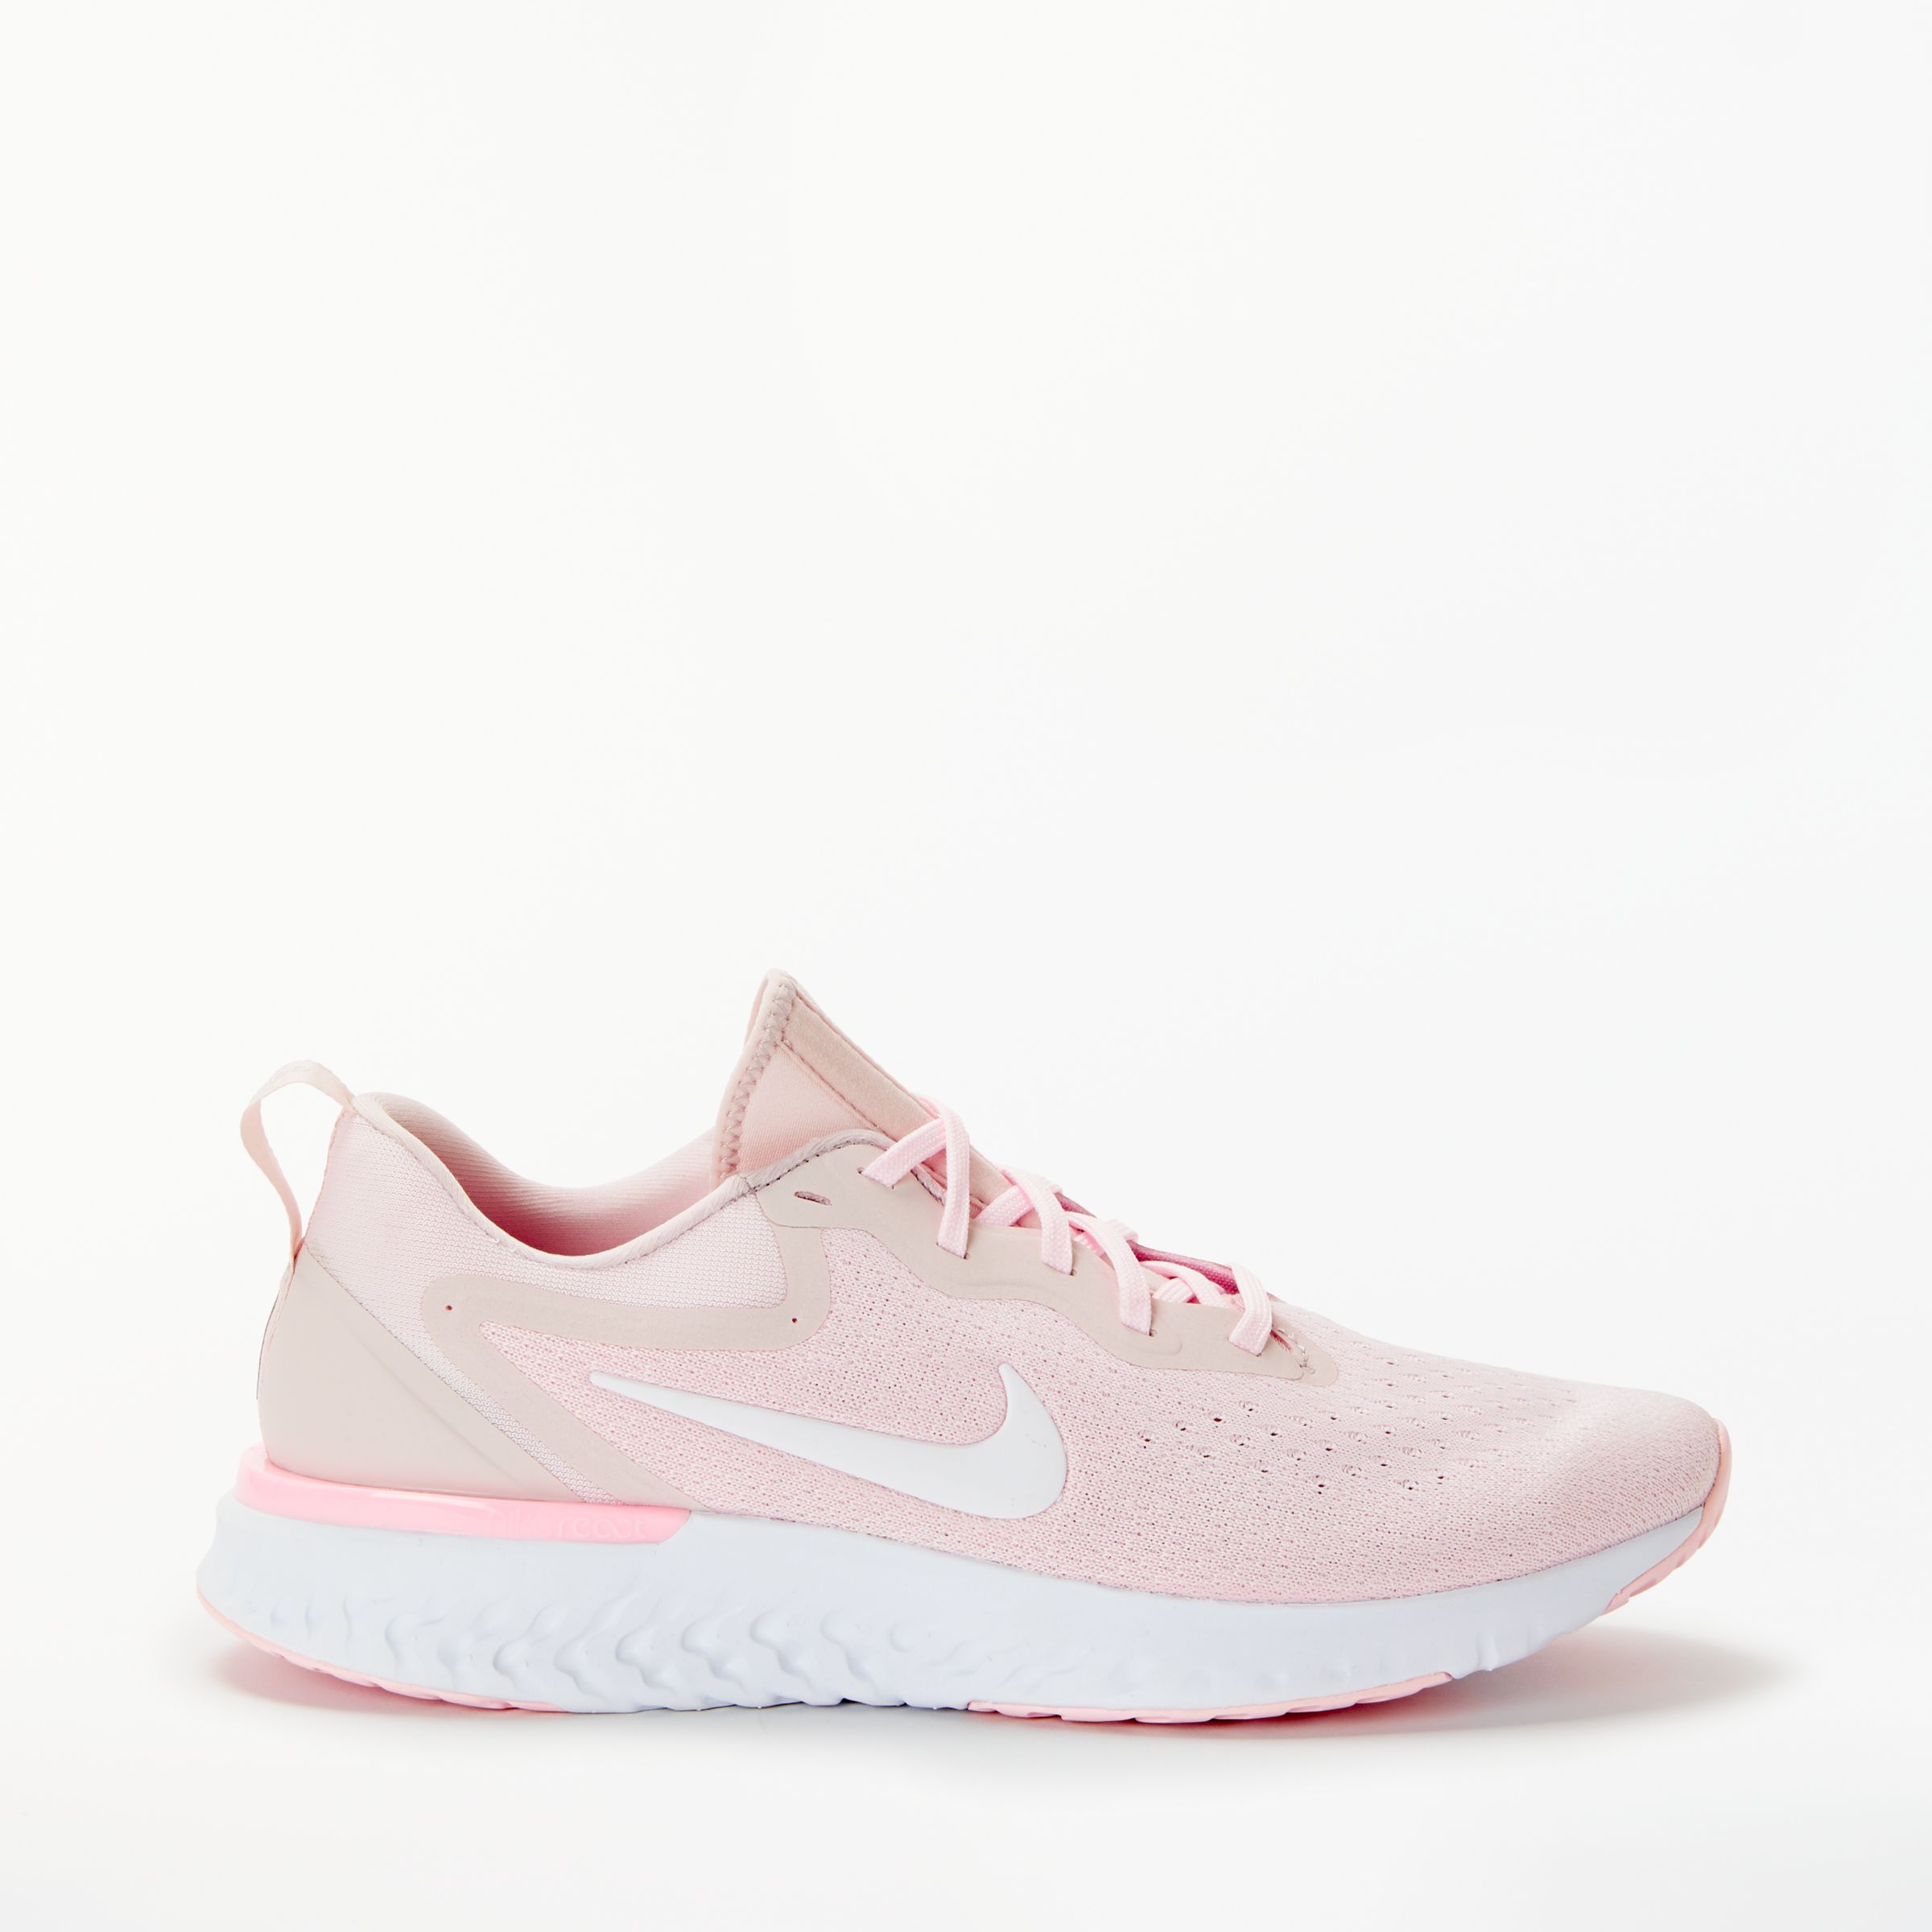 light pink nike women's sneakers